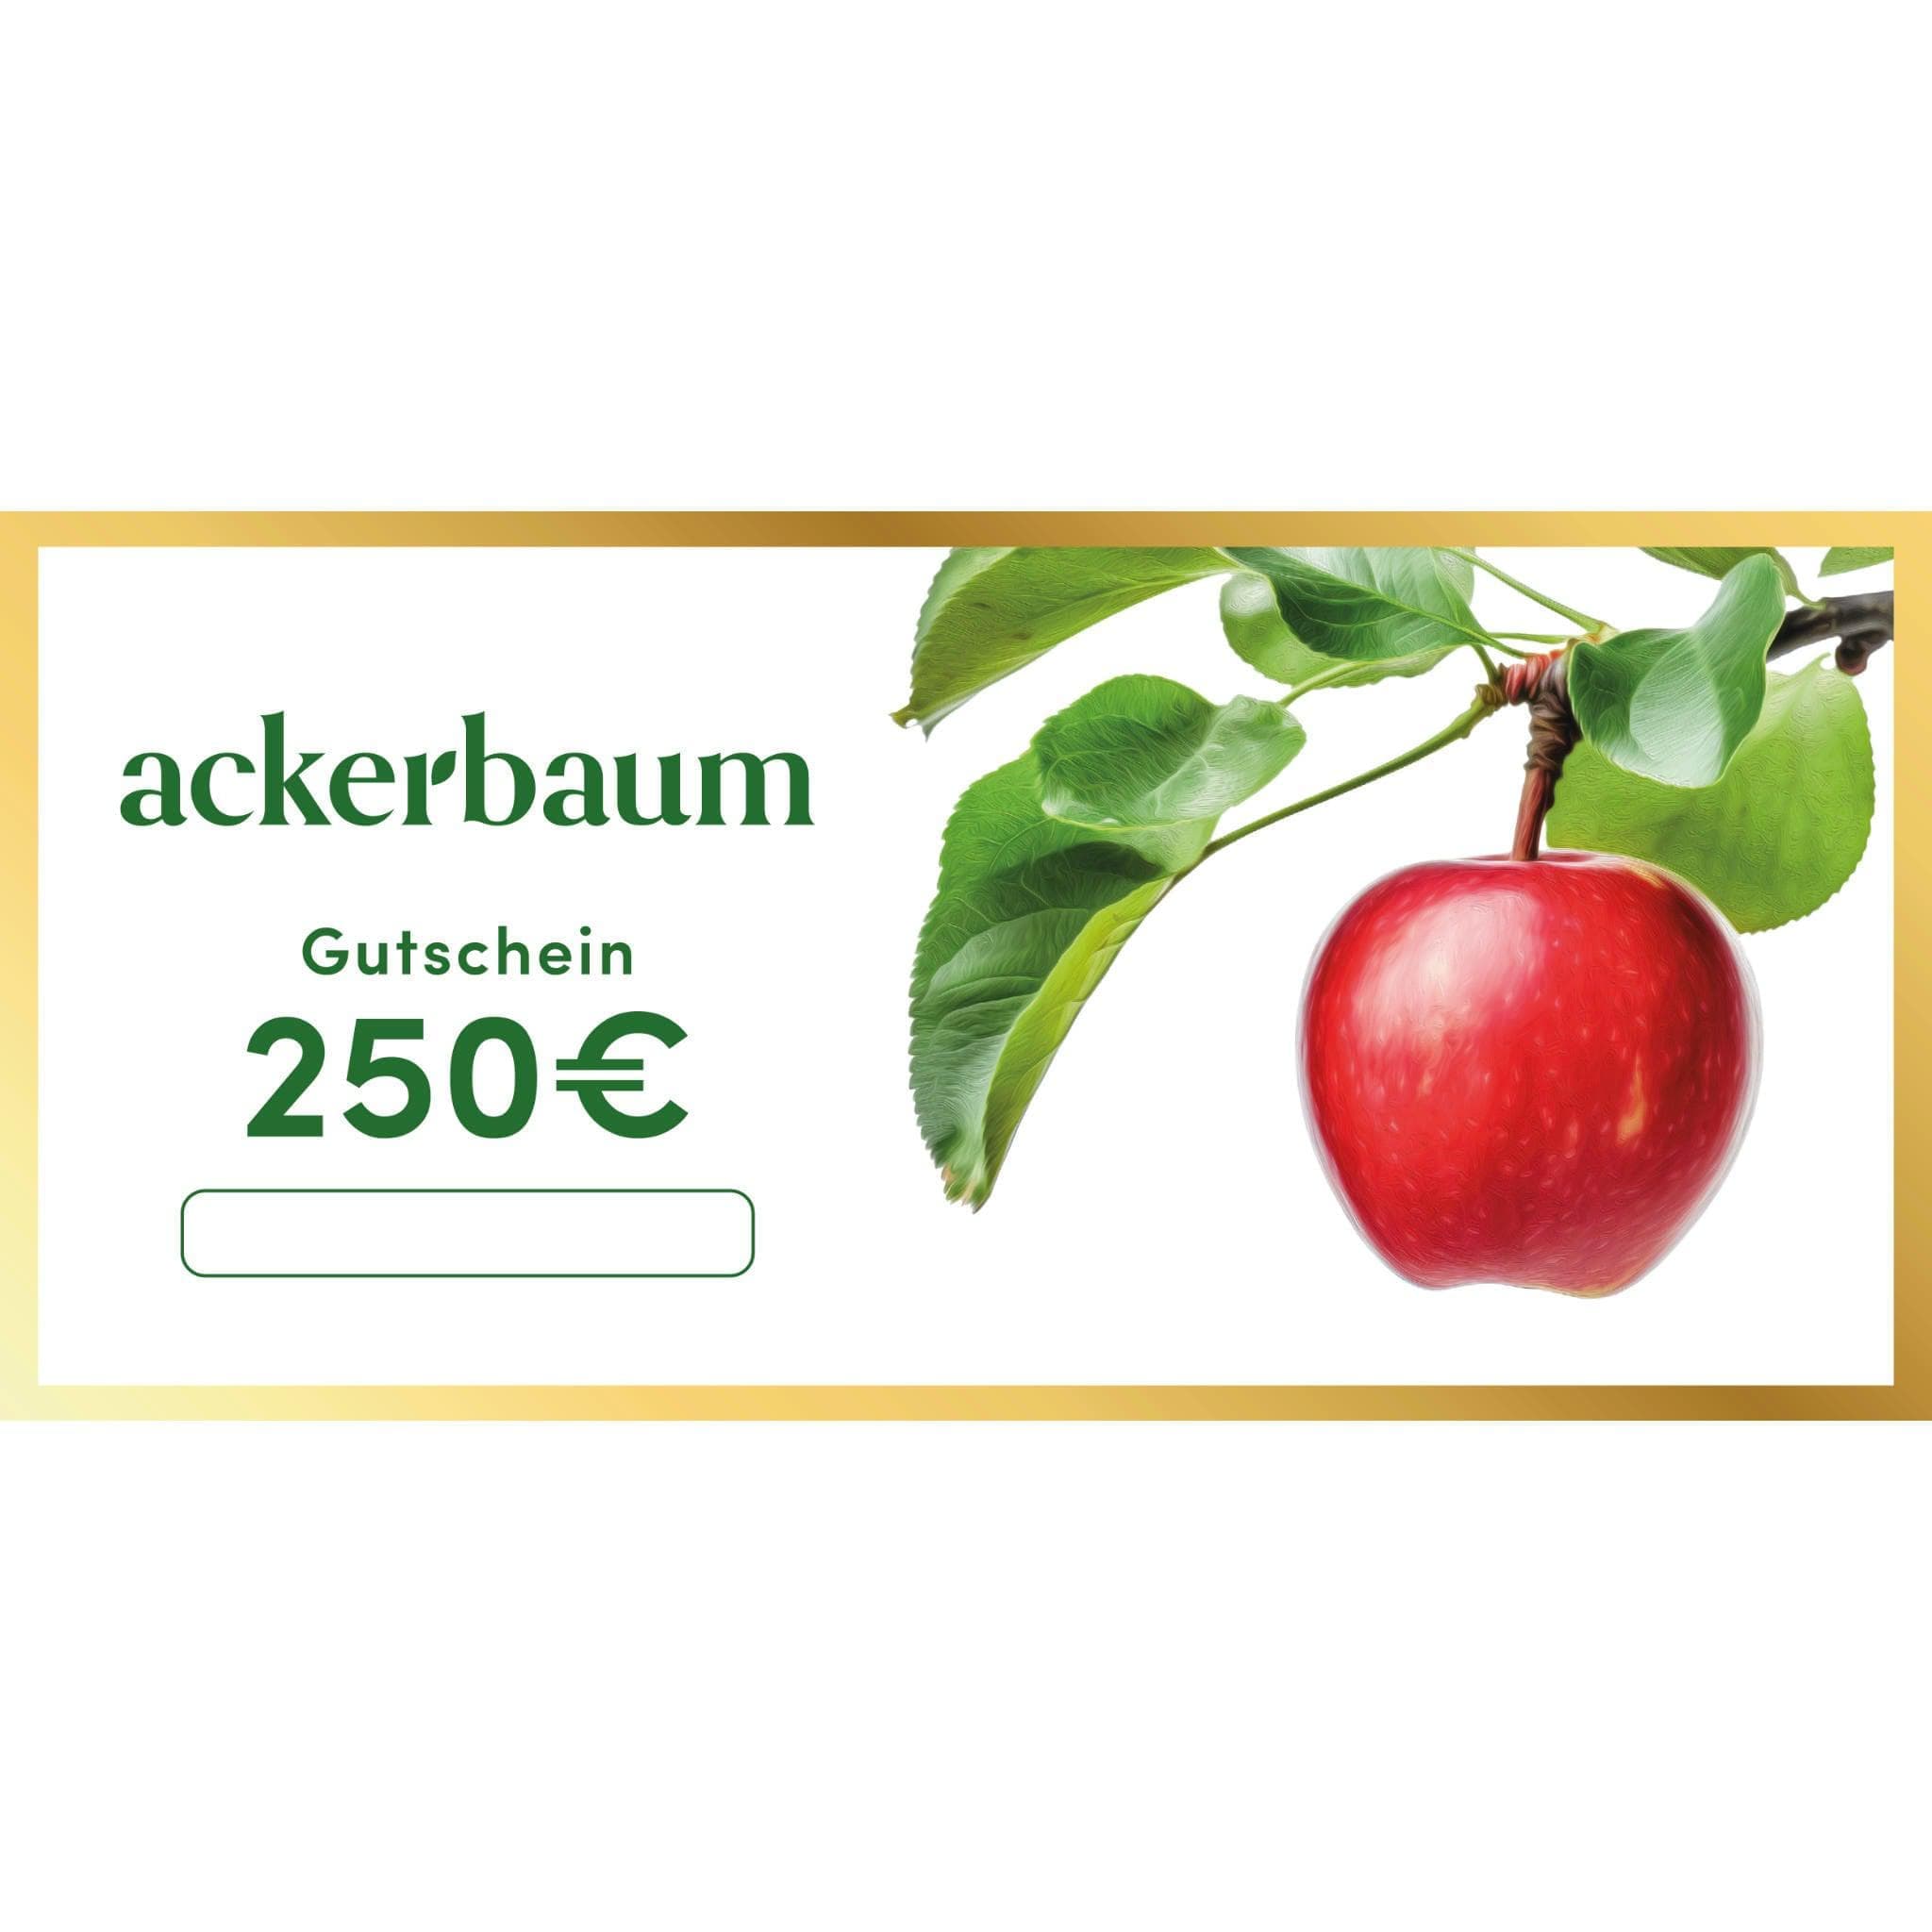 ackerbaum 250€ Gutschein - Edler Papiergutschein mit Goldrand - ackerbaum